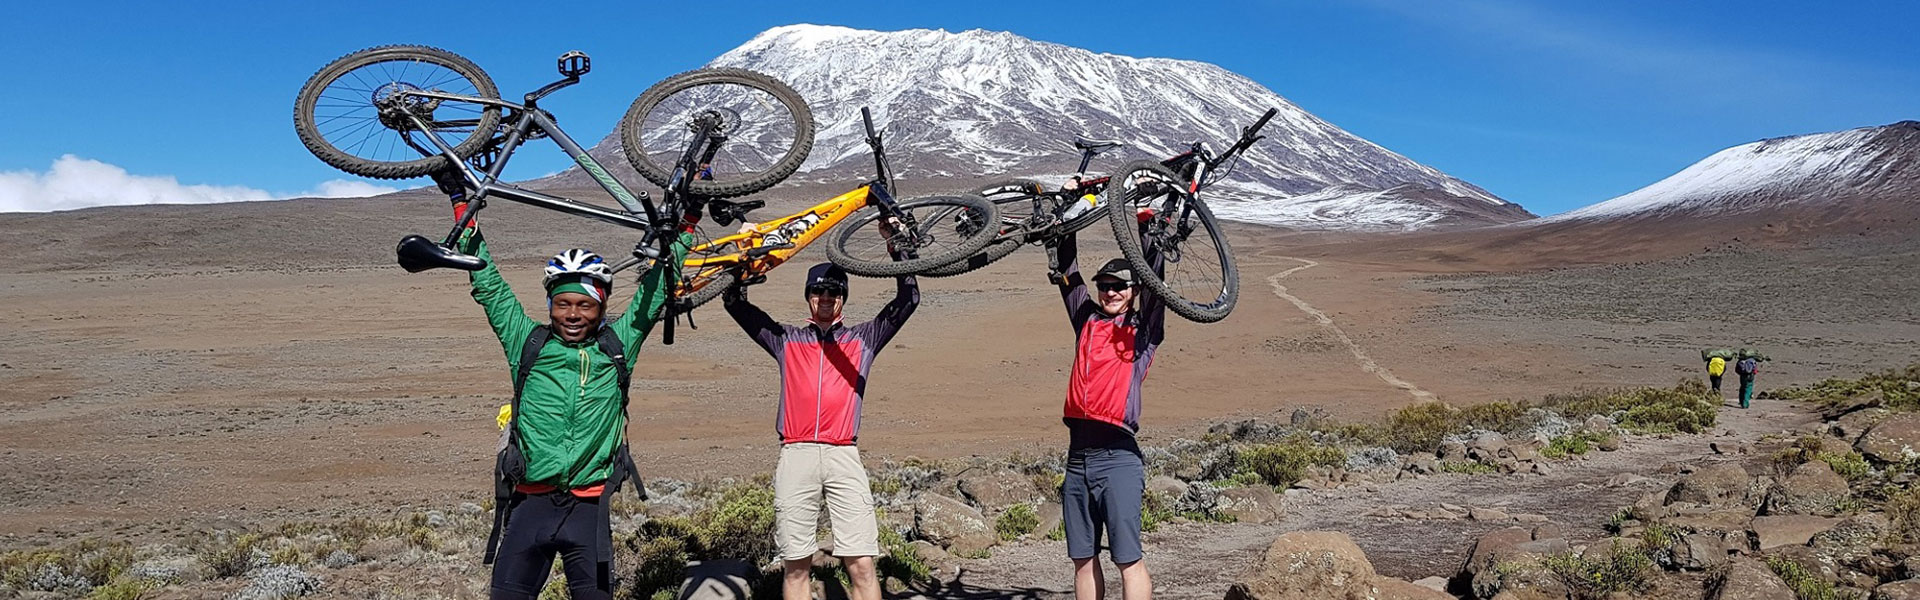 Kilimanjaro 360° Challenge